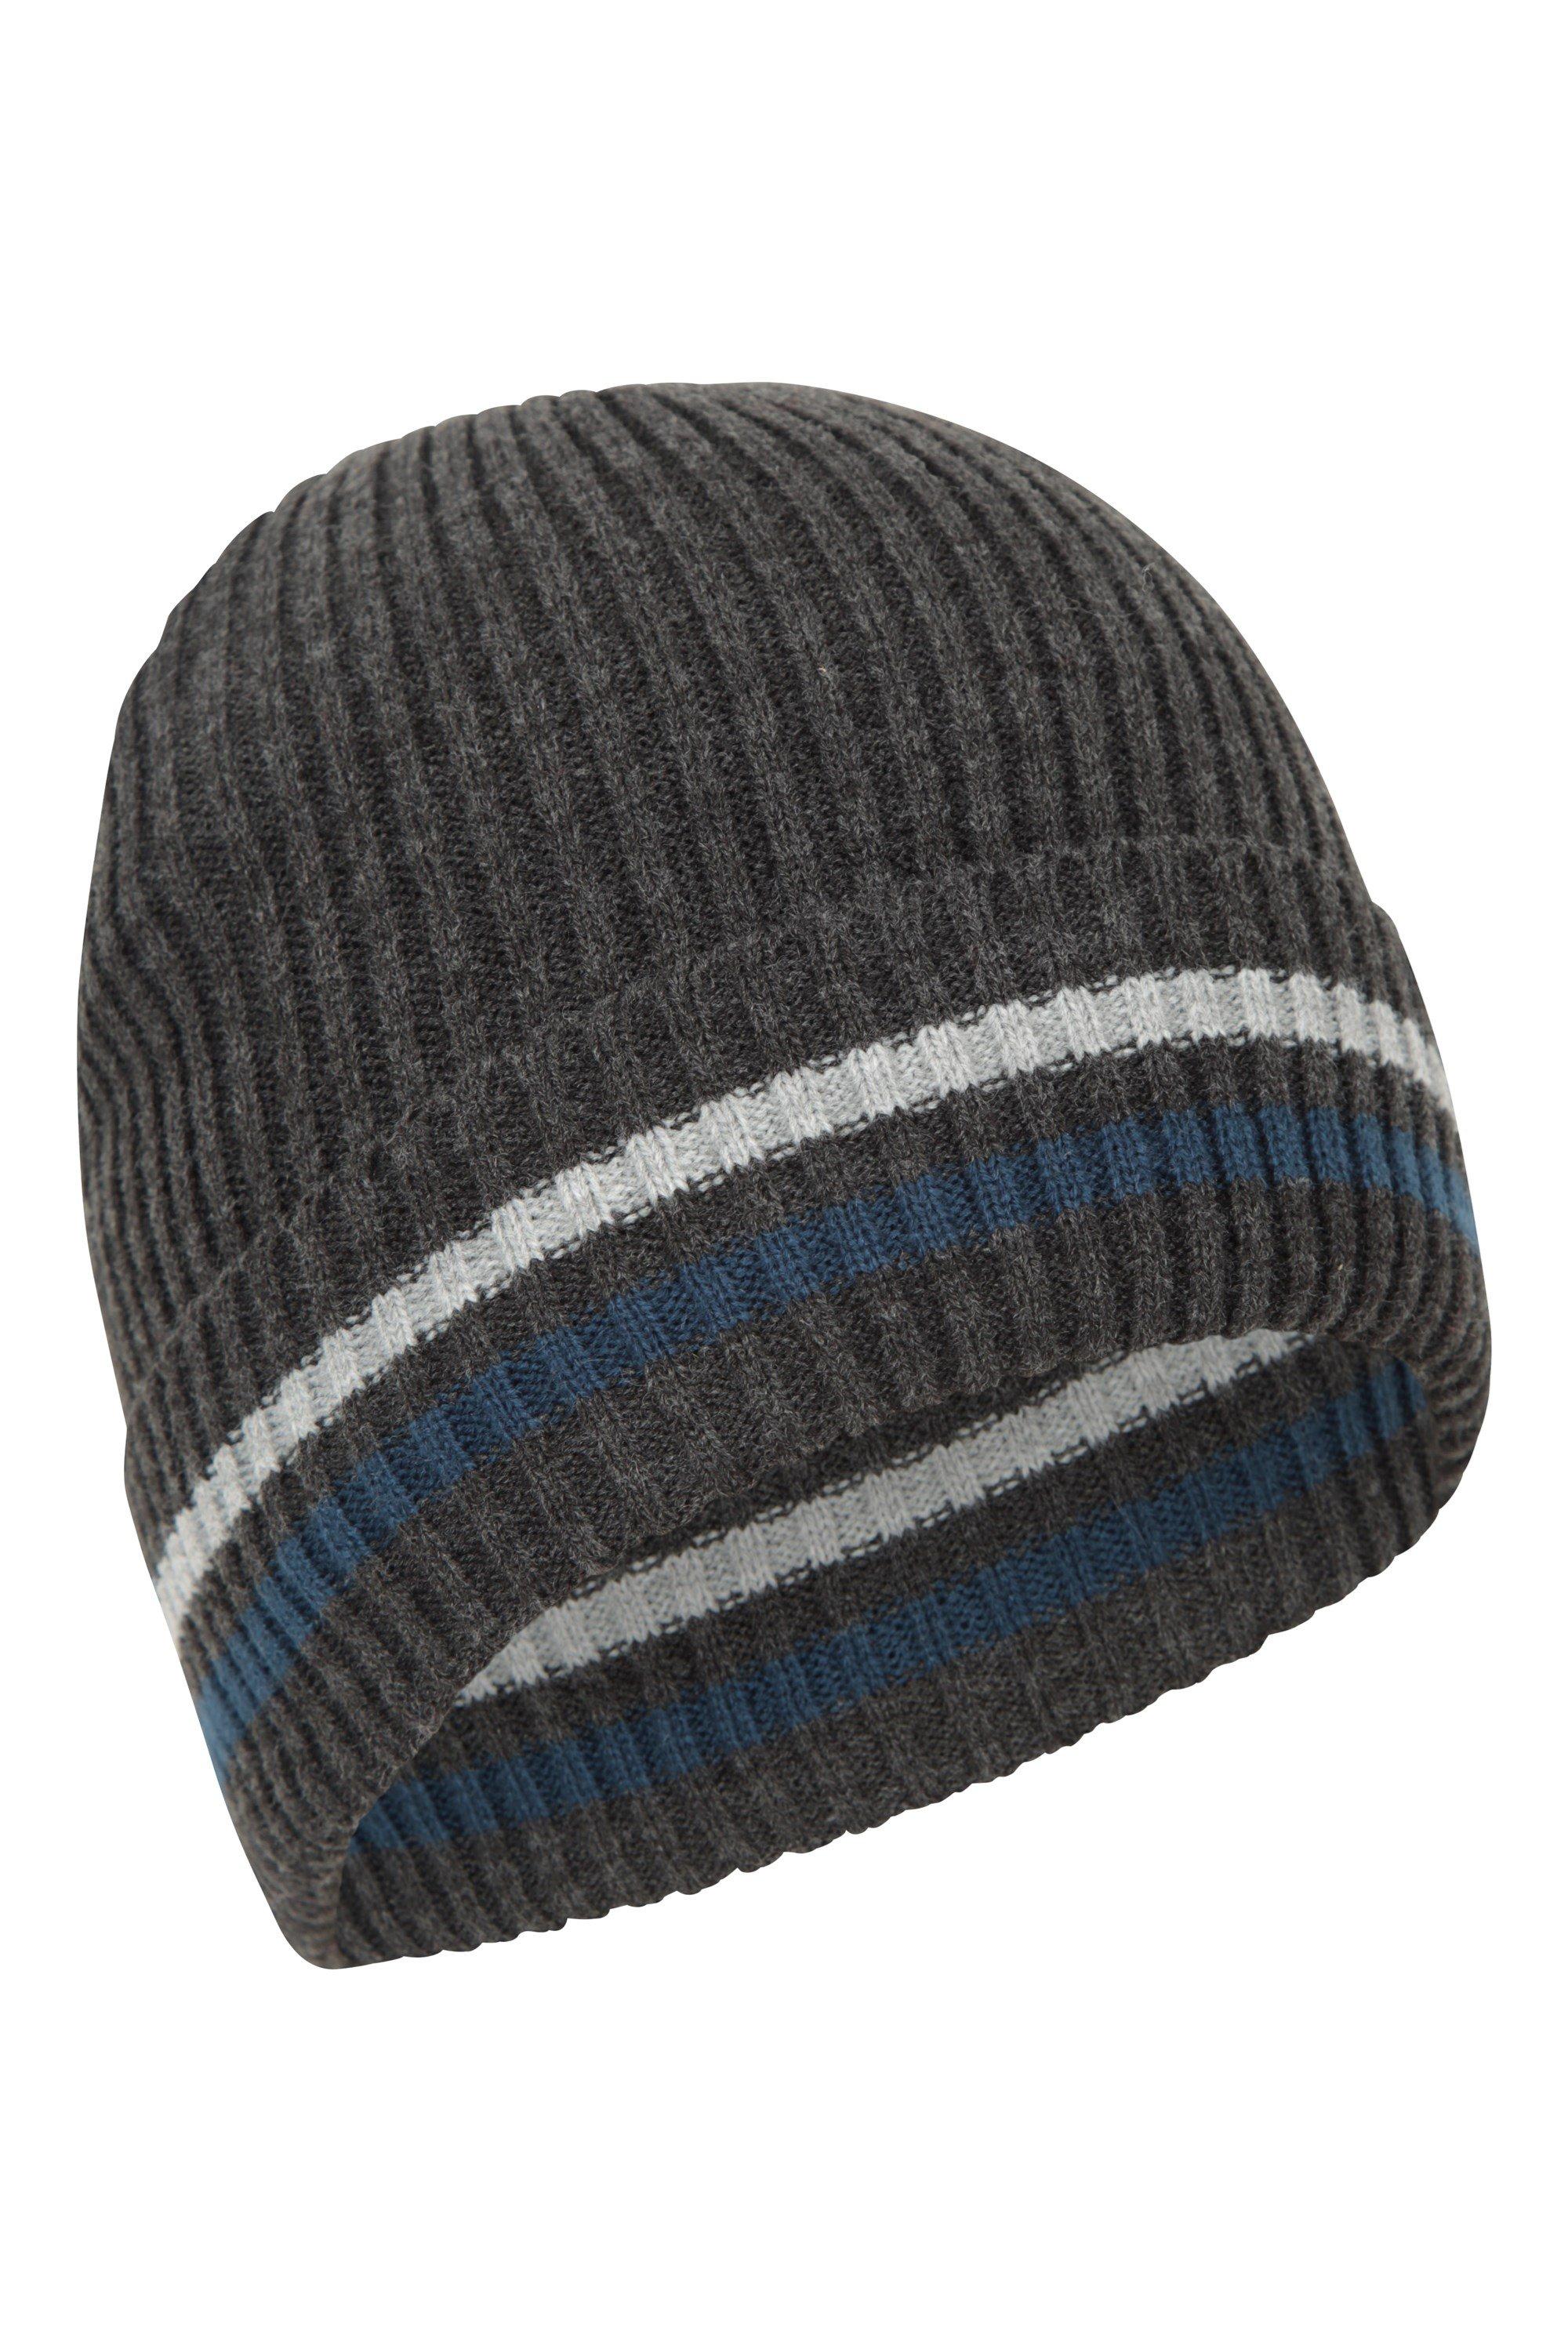 Зимняя шапка-бини с меховой подкладкой и флисовой подкладкой в ​​полоску Yeti Mountain Warehouse, серый